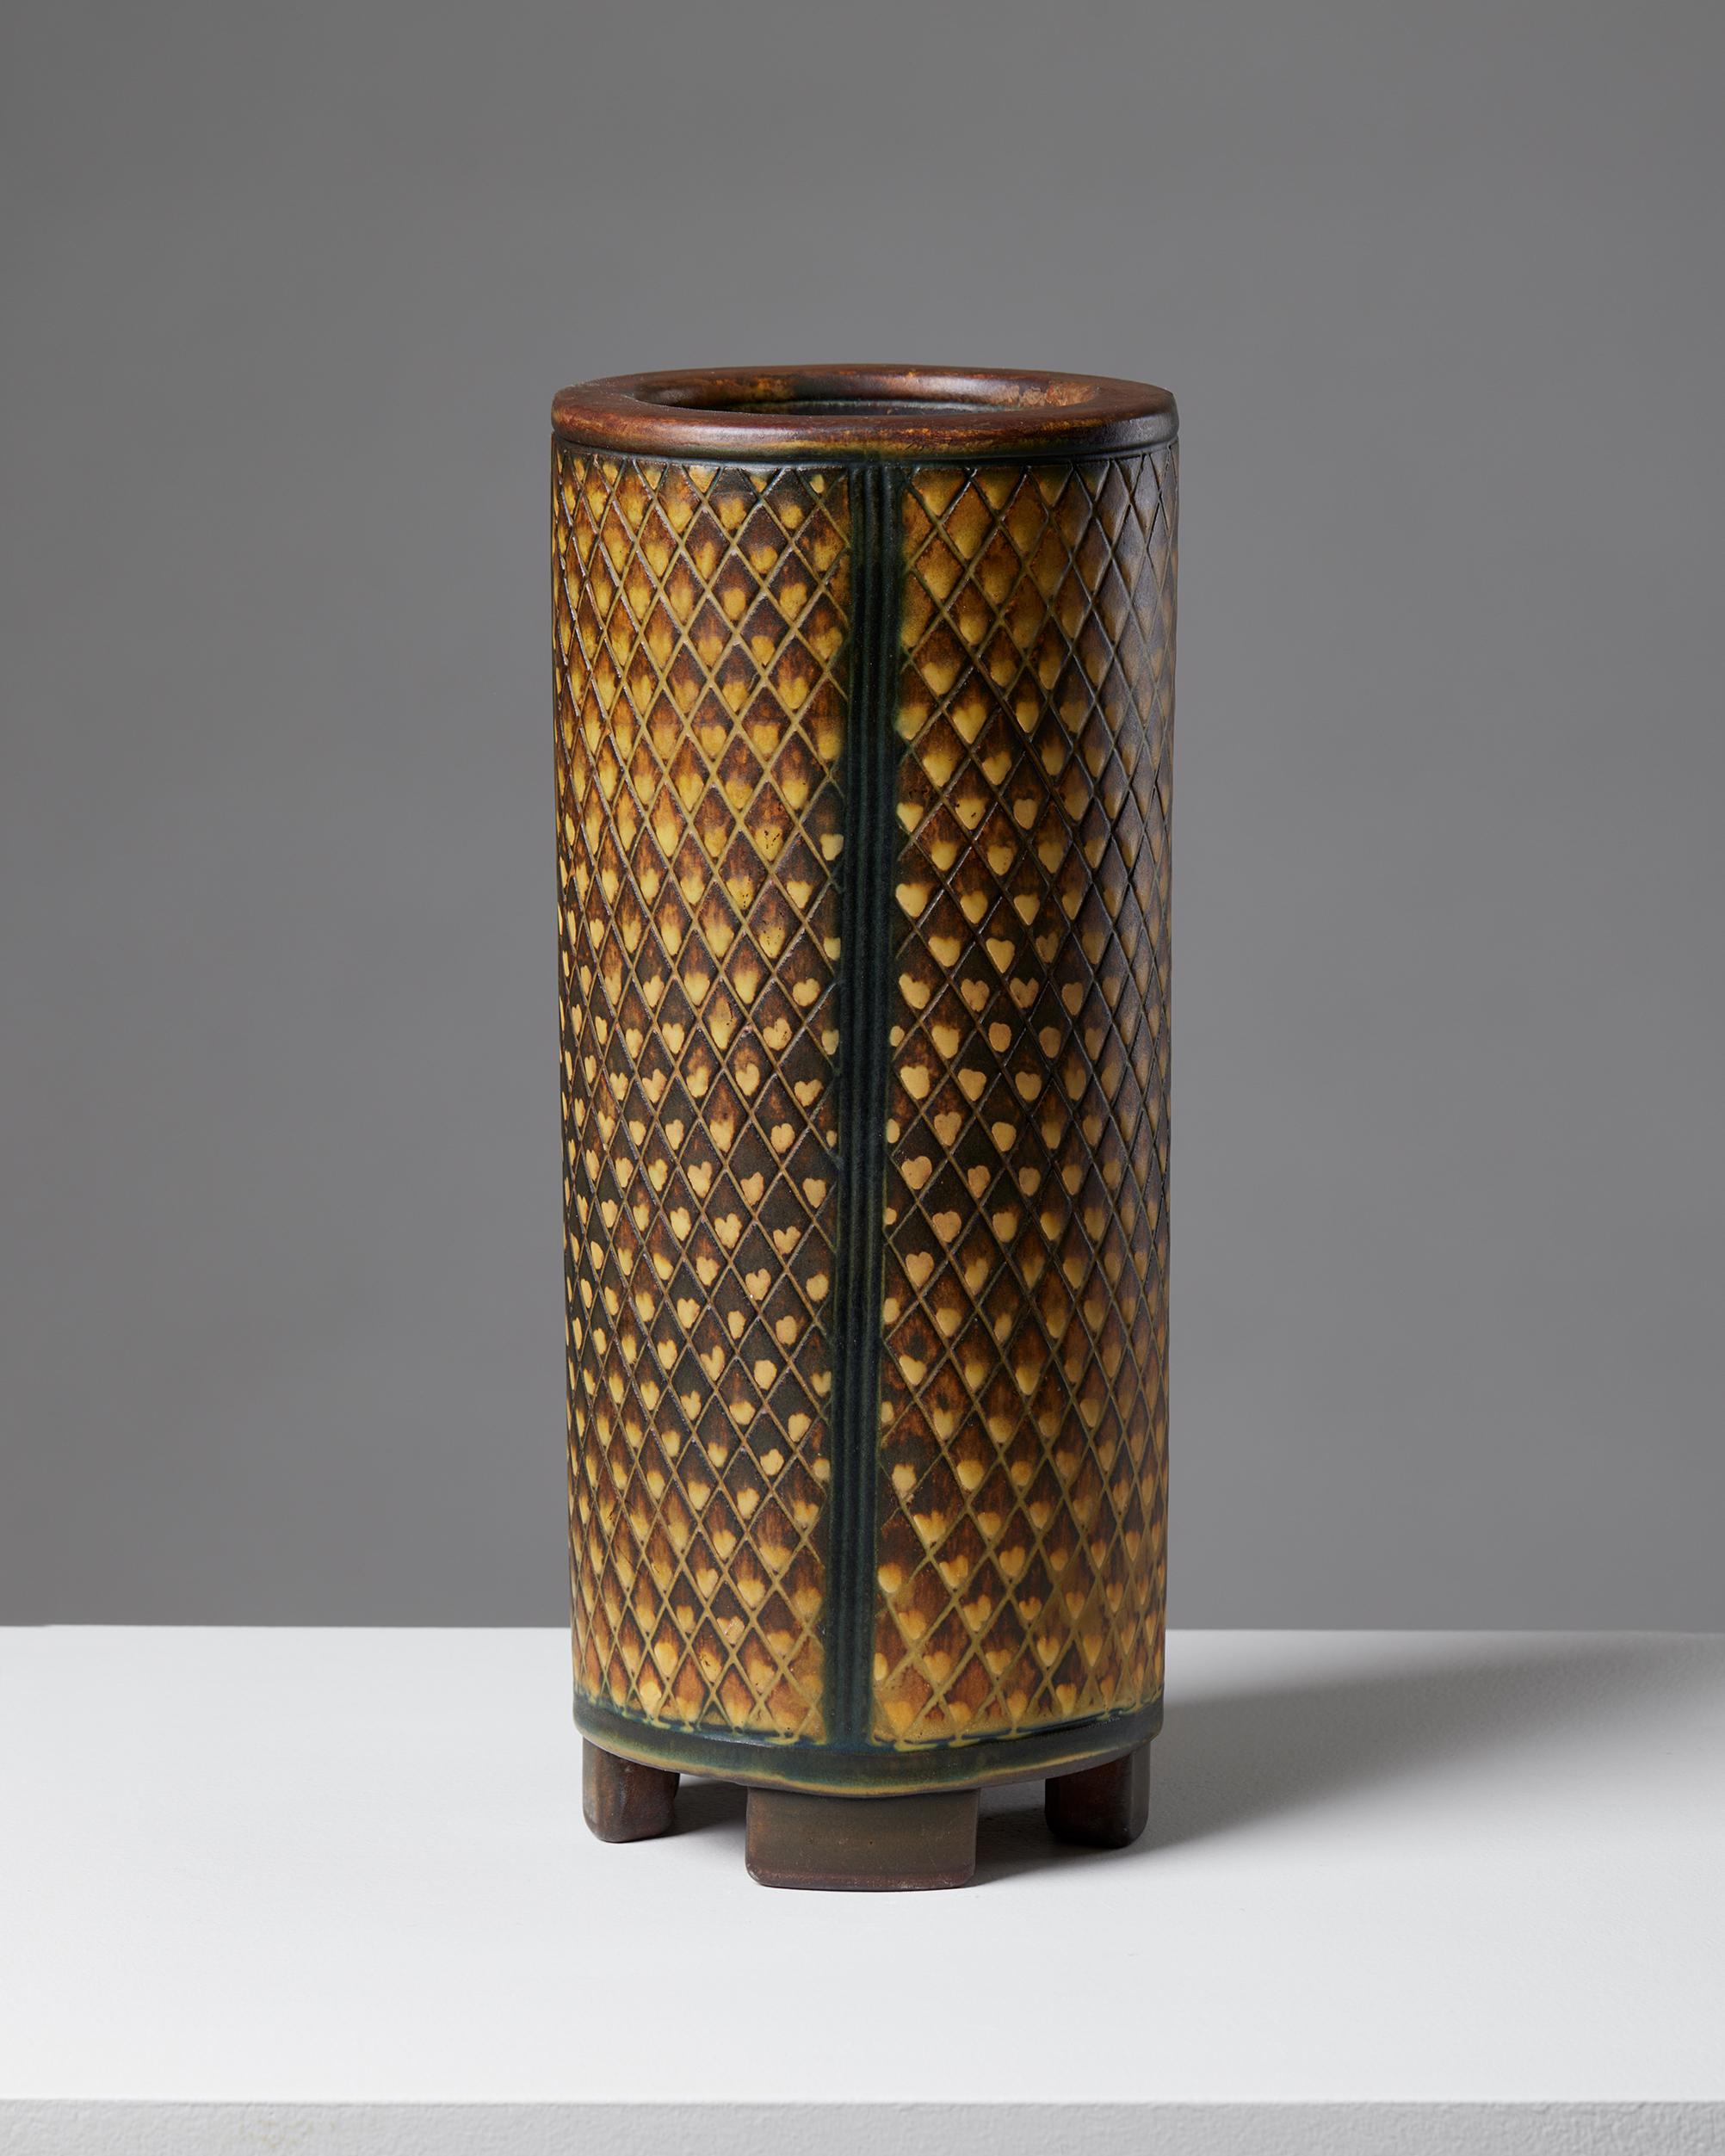 Vase 'Farsta' conçu par Wilhelm Kåge pour Gustavsberg,
Suède, 1952.

Grès.

Signé.

H : 29,5 cm
Diamètre : 12.5 cm